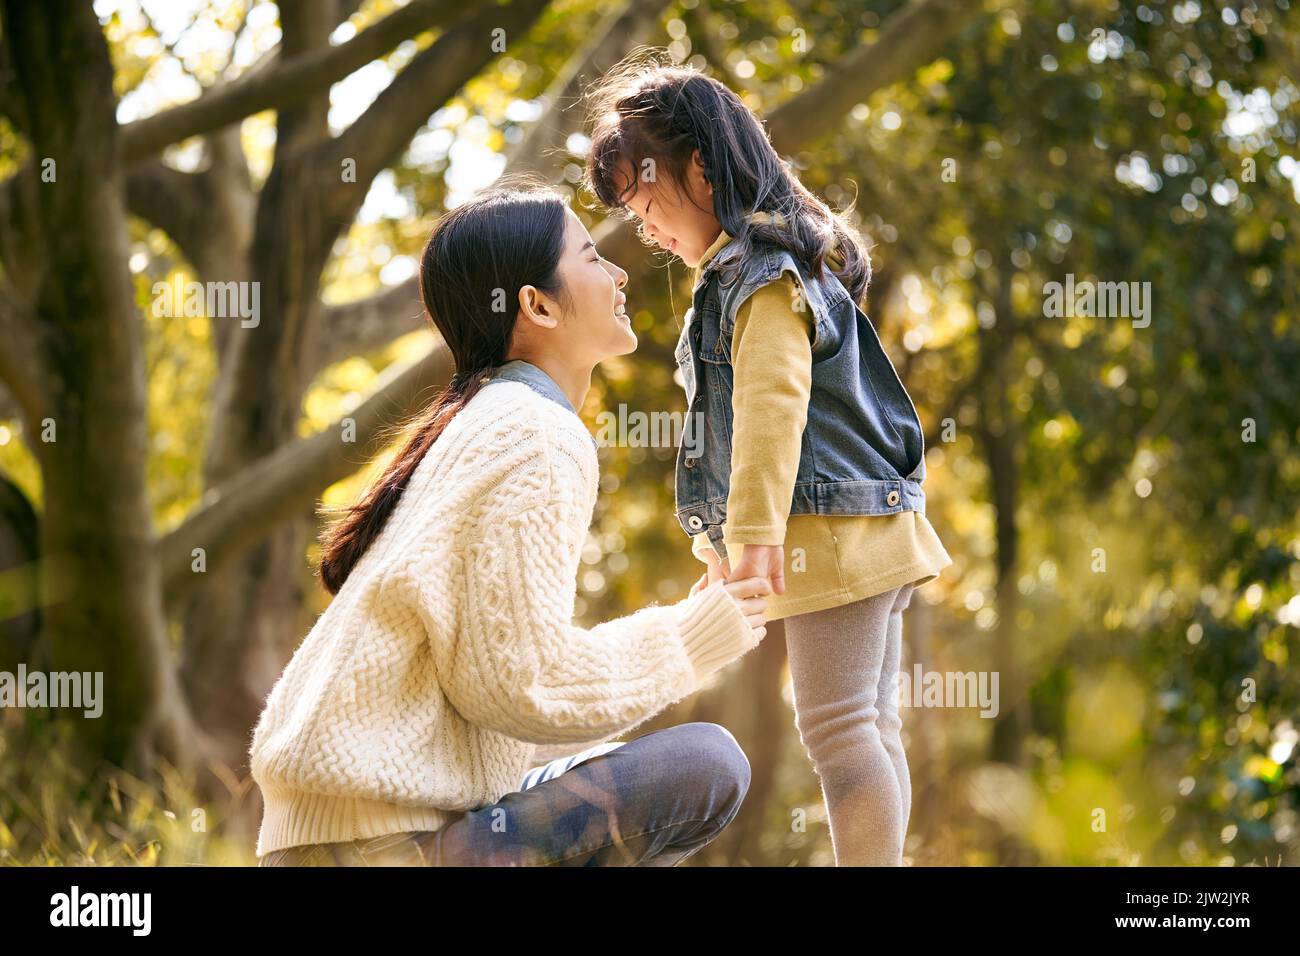 giovane madre asiatica e figlia prescolare godendo la natura avendo un buon tempo all'aperto nel parco Foto Stock